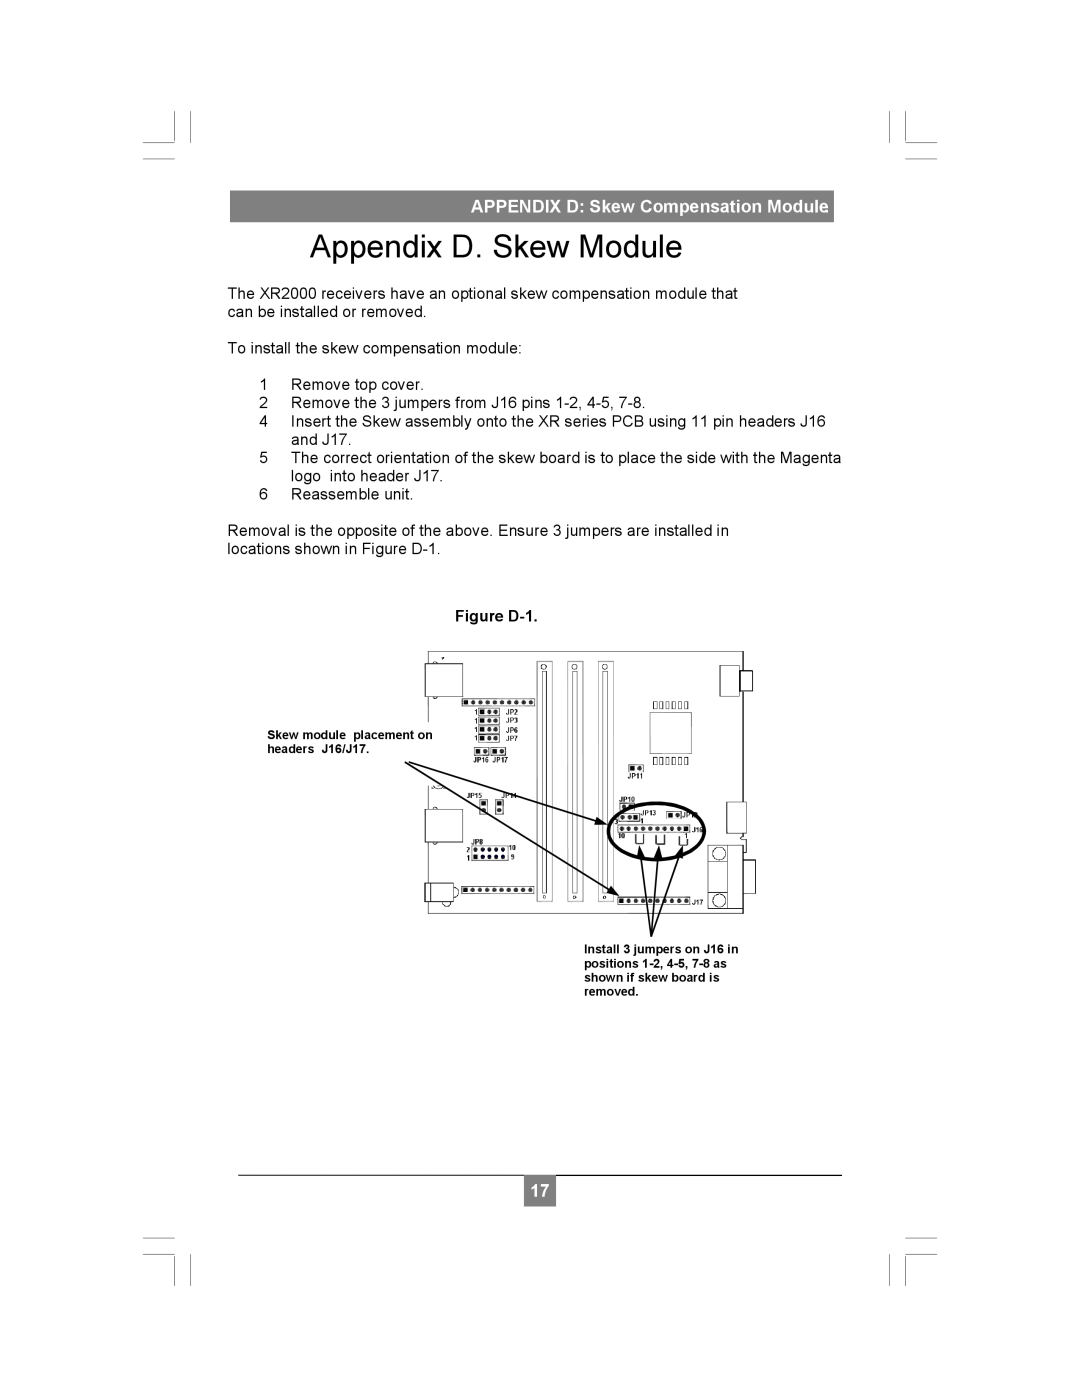 Magenta XR2000 setup guide Appendix D. Skew Module, APPENDIX D Skew Compensation Module 